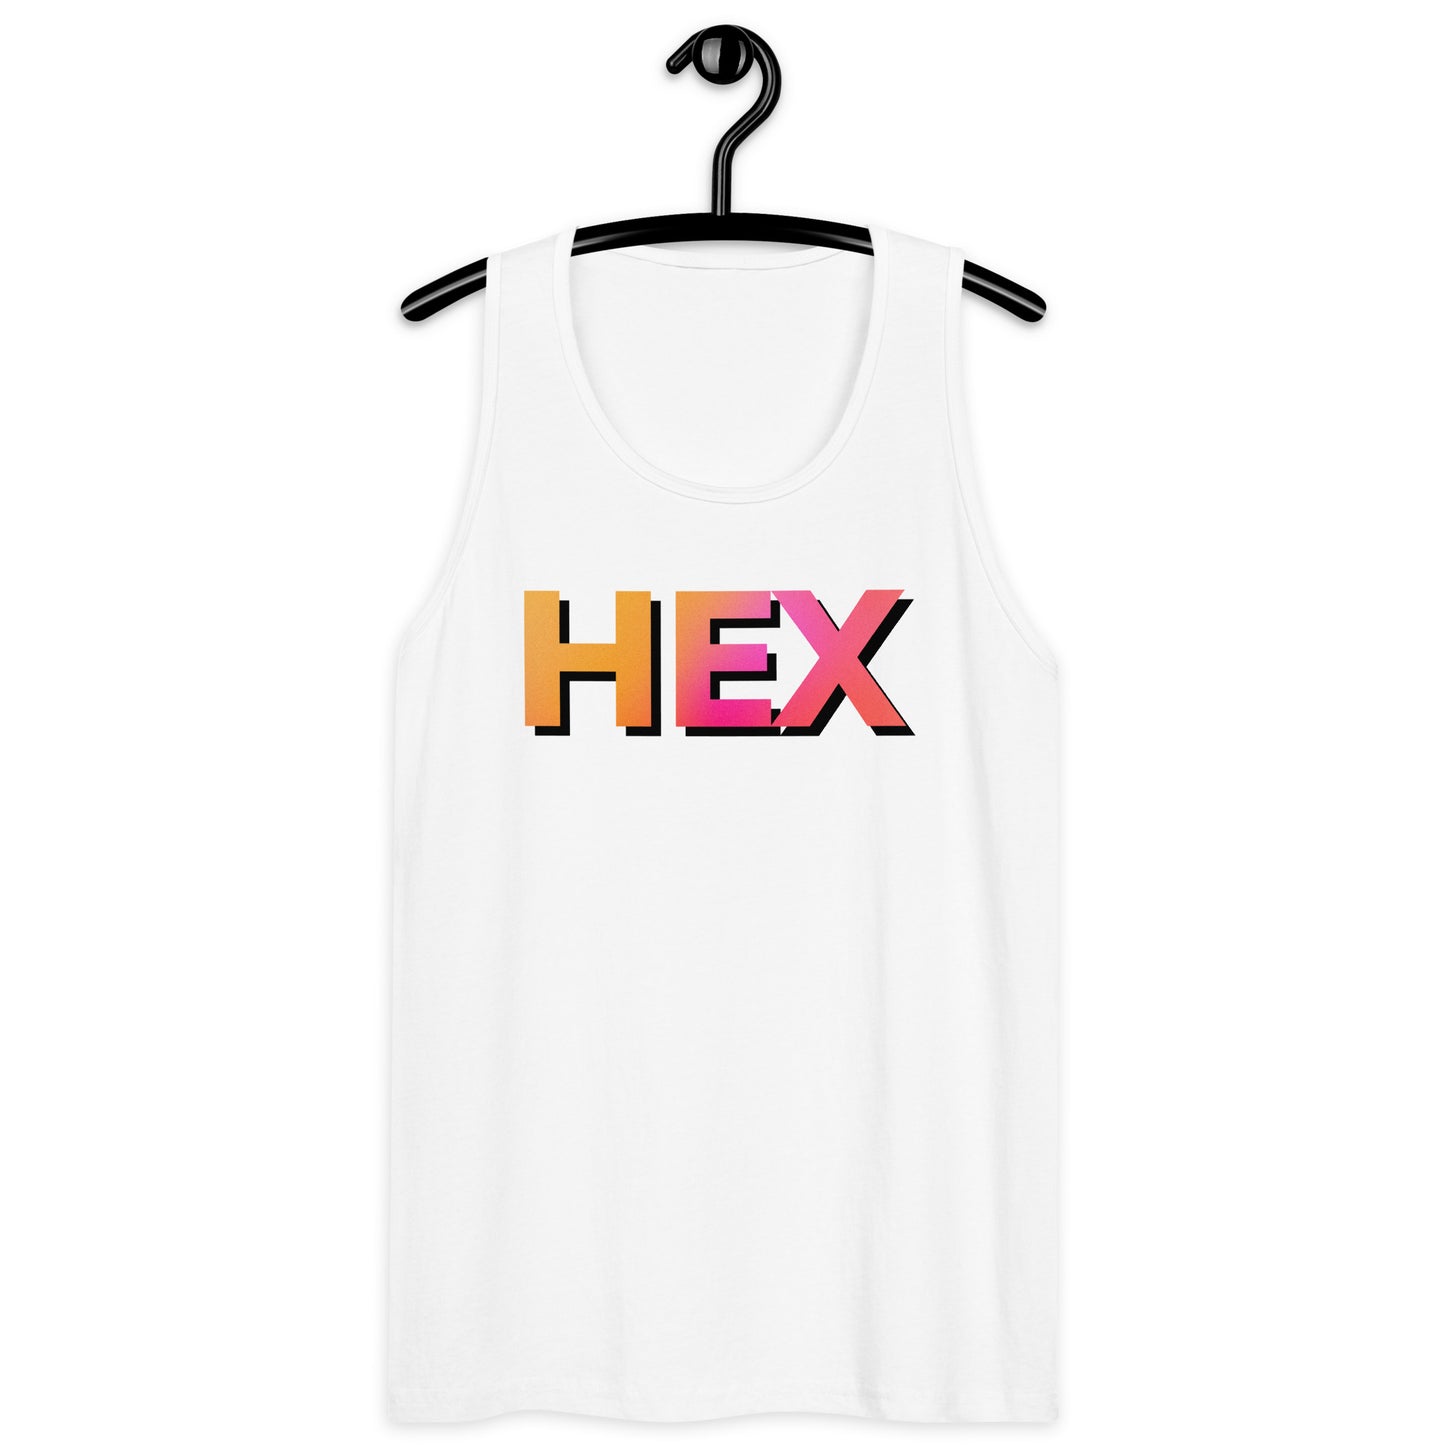 HEX Men’s Premium Tank Top